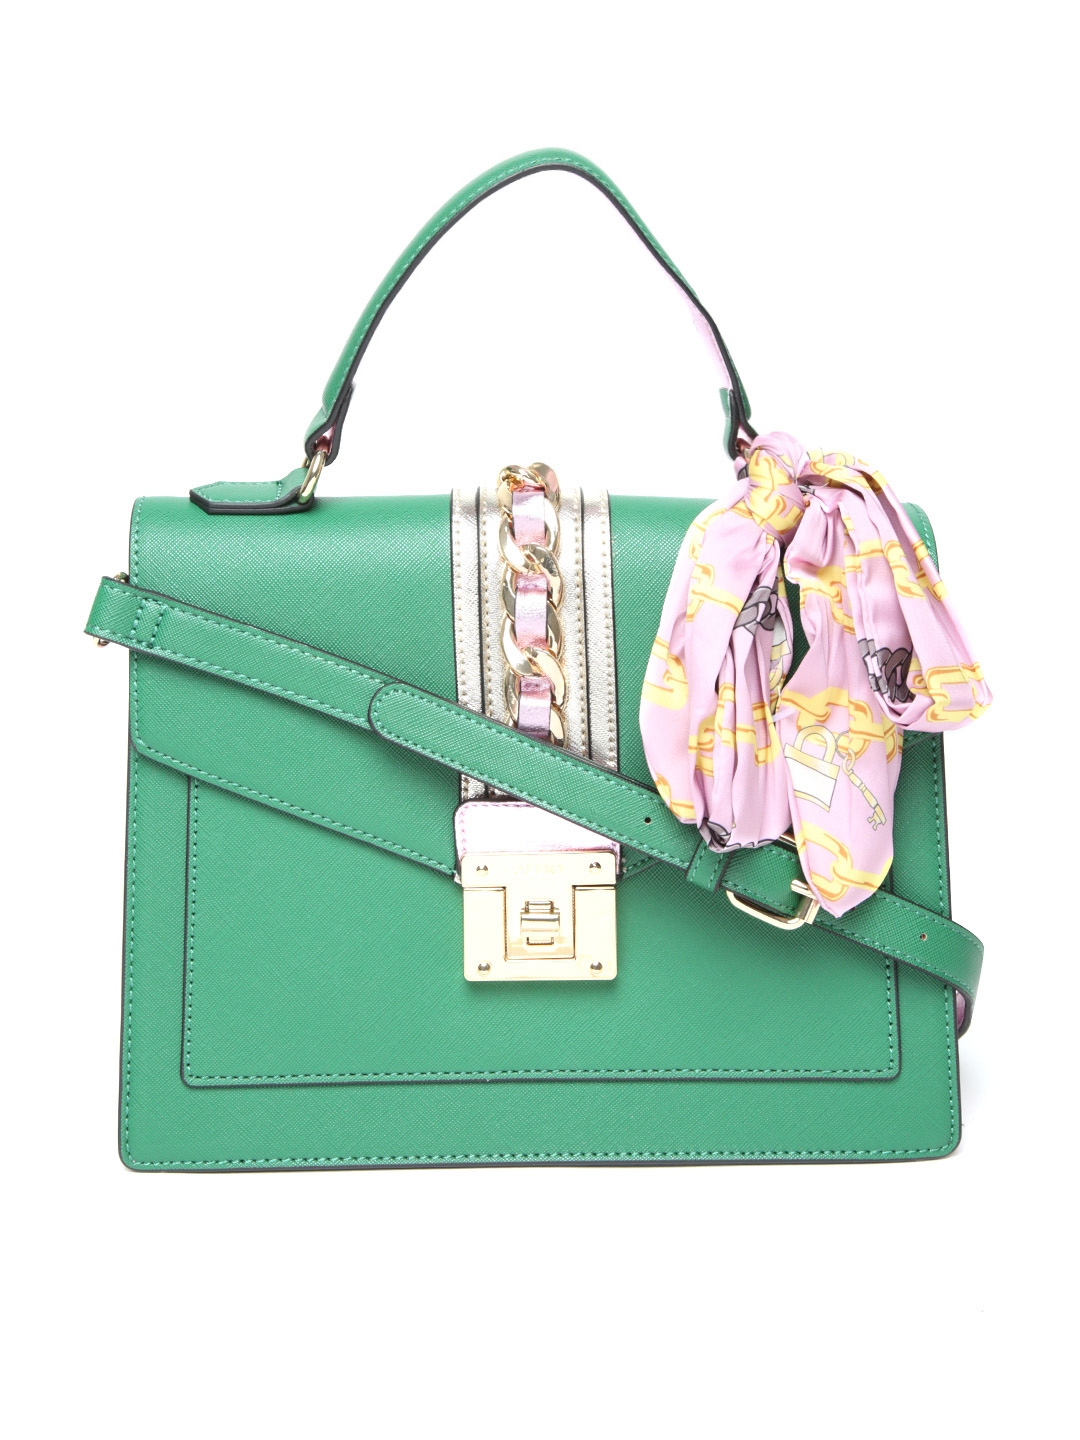 aldo green handbag